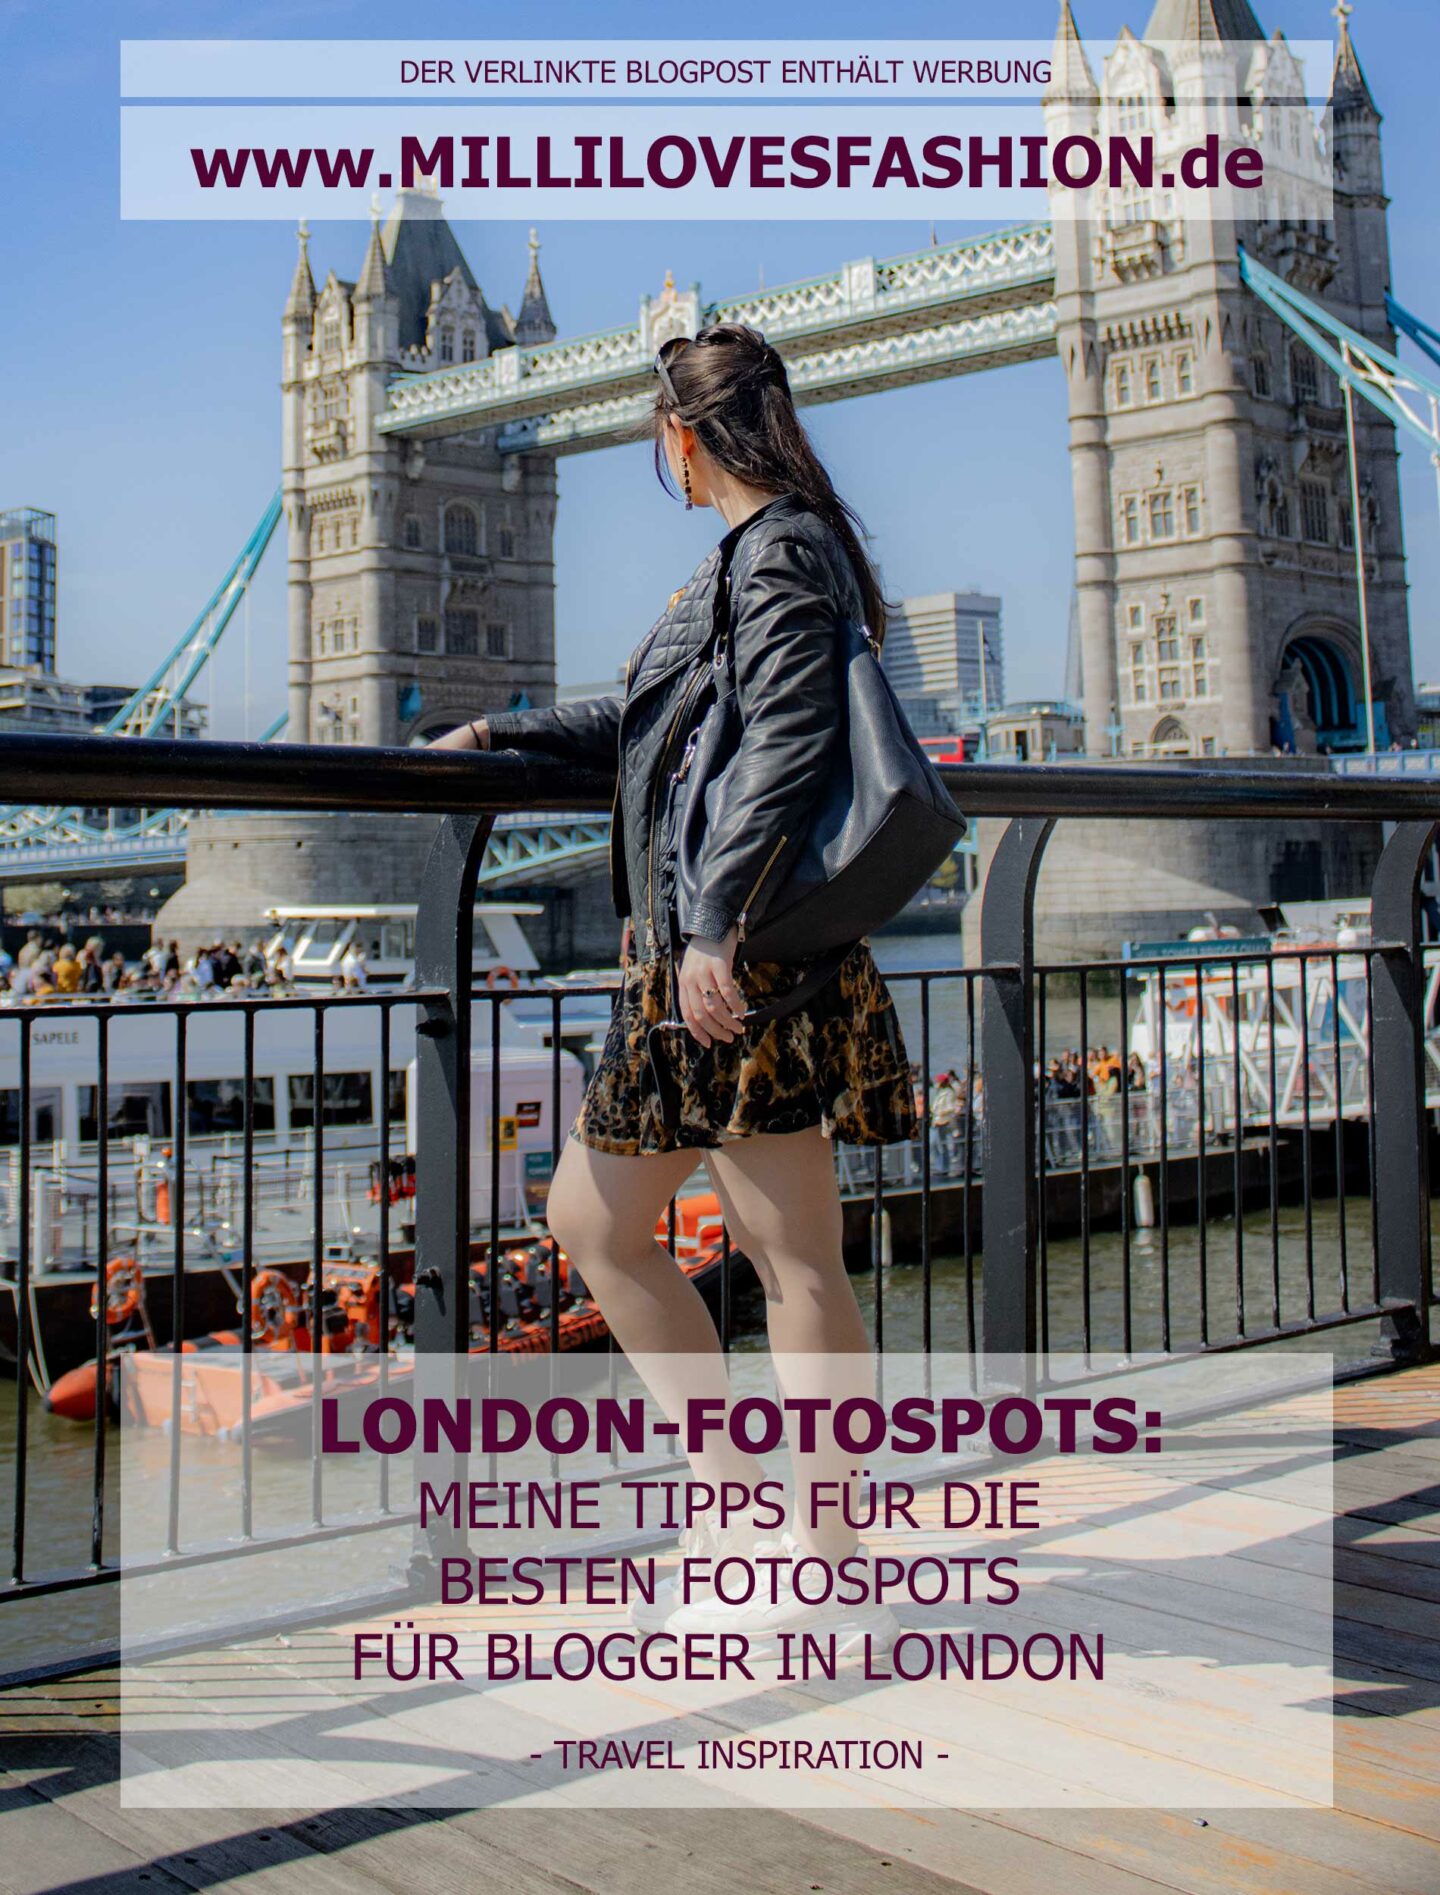 Tipps für coole Fotospots für Blogger in London